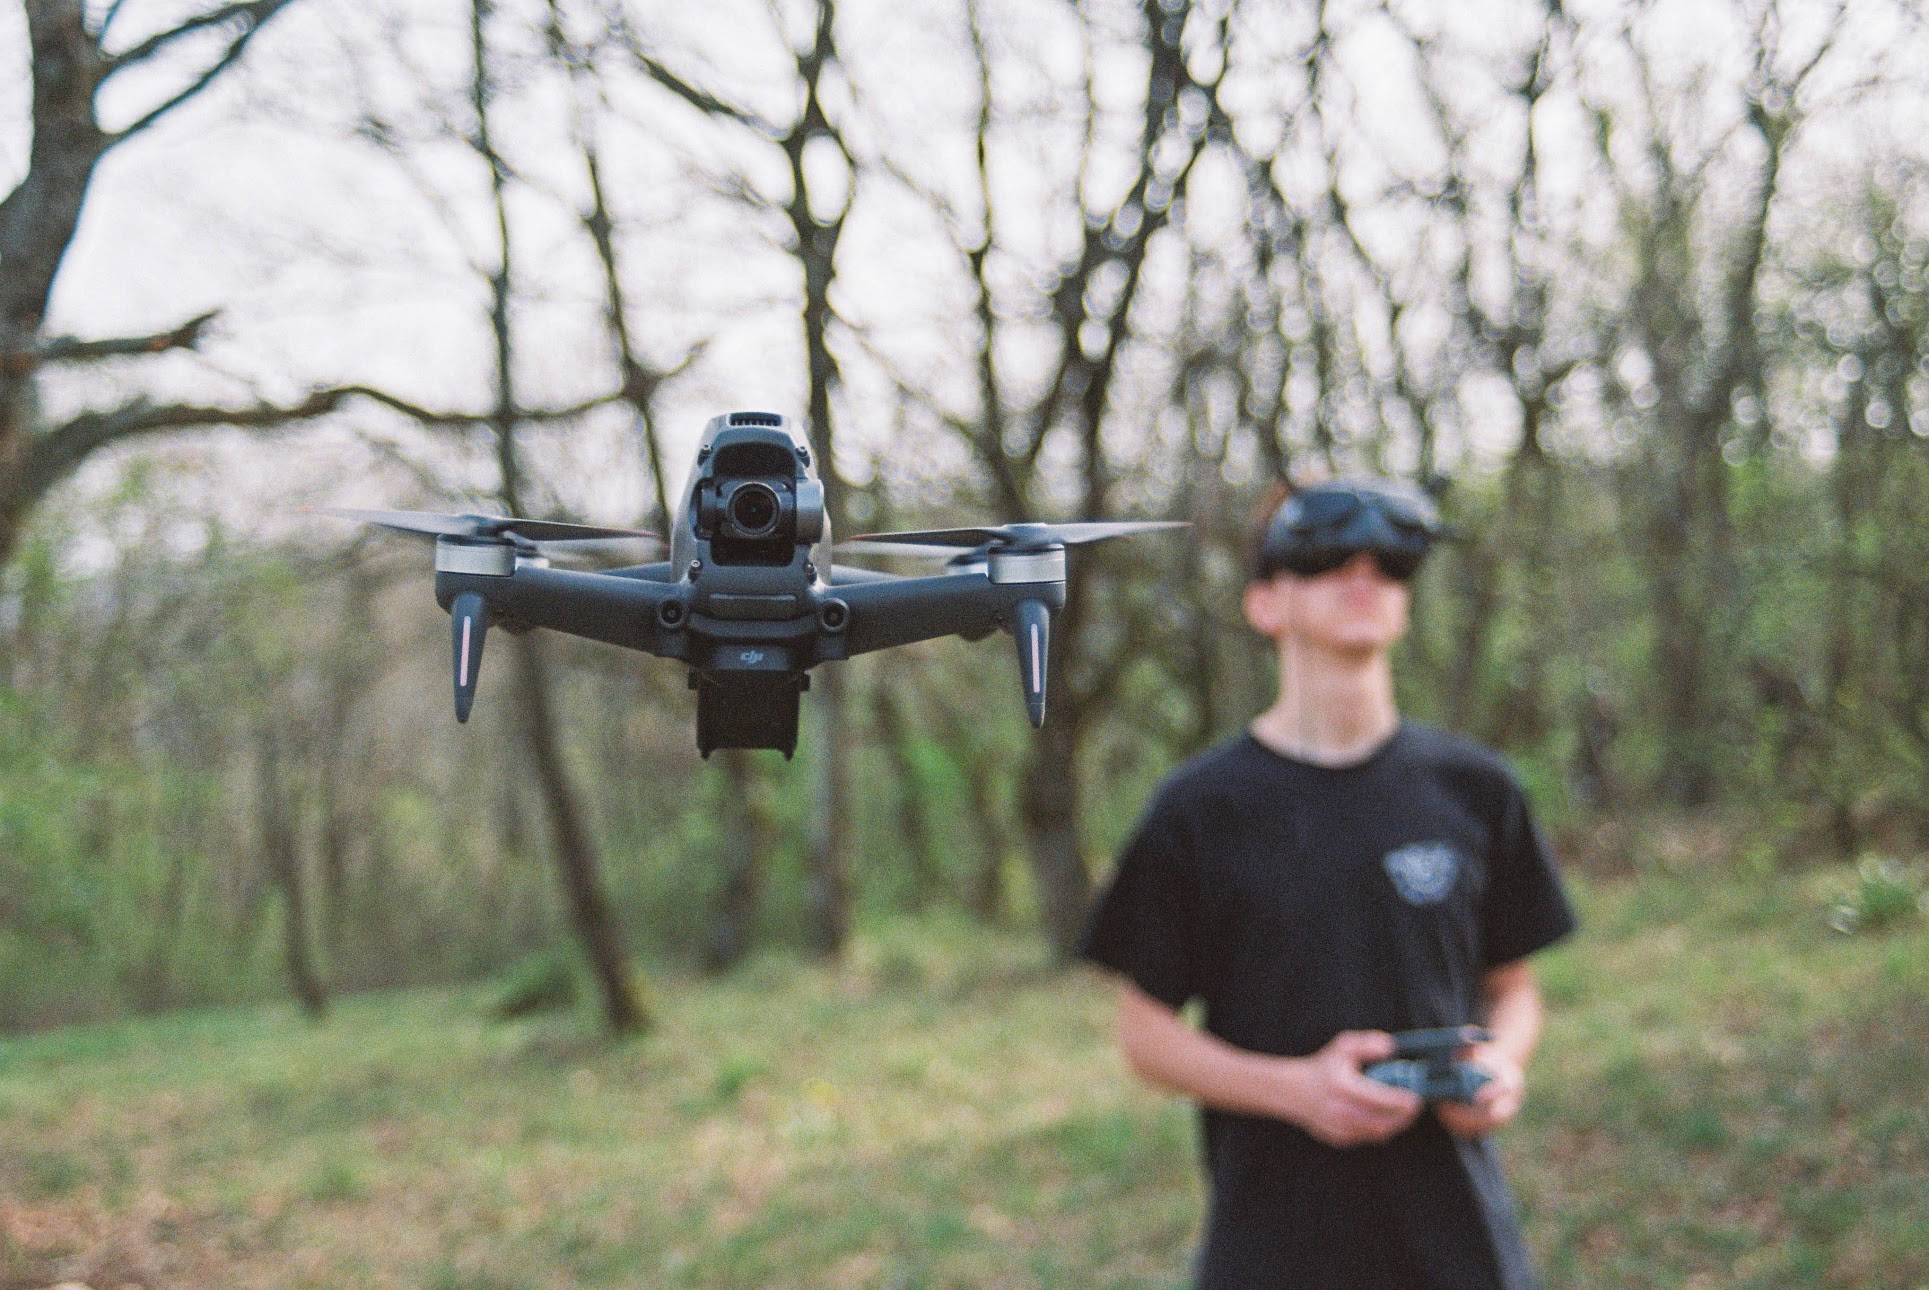 Drone avec casque de réalité virtuelle - , les ventes  publiques en 1 clic.